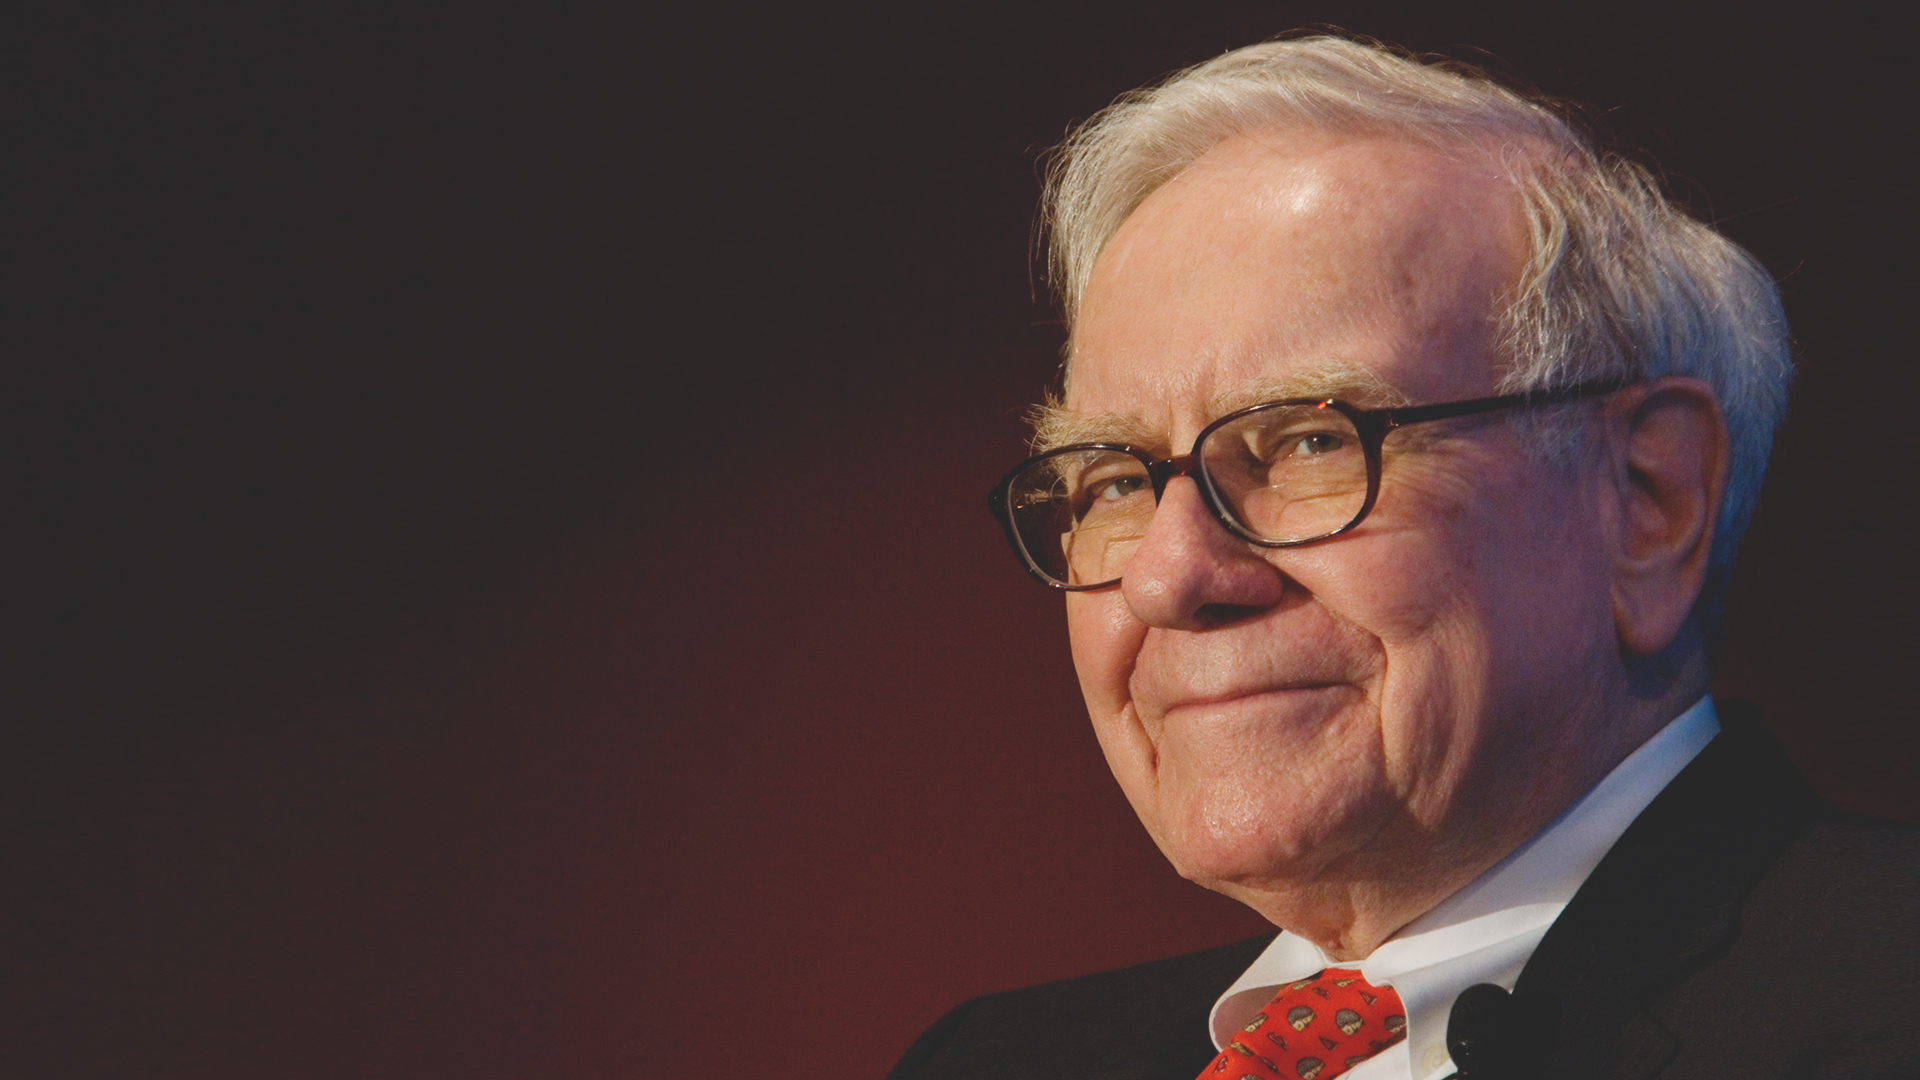 Warren Buffett - miliardario, magnate americano degli affari e filantropofonte Wallstreetplaybook